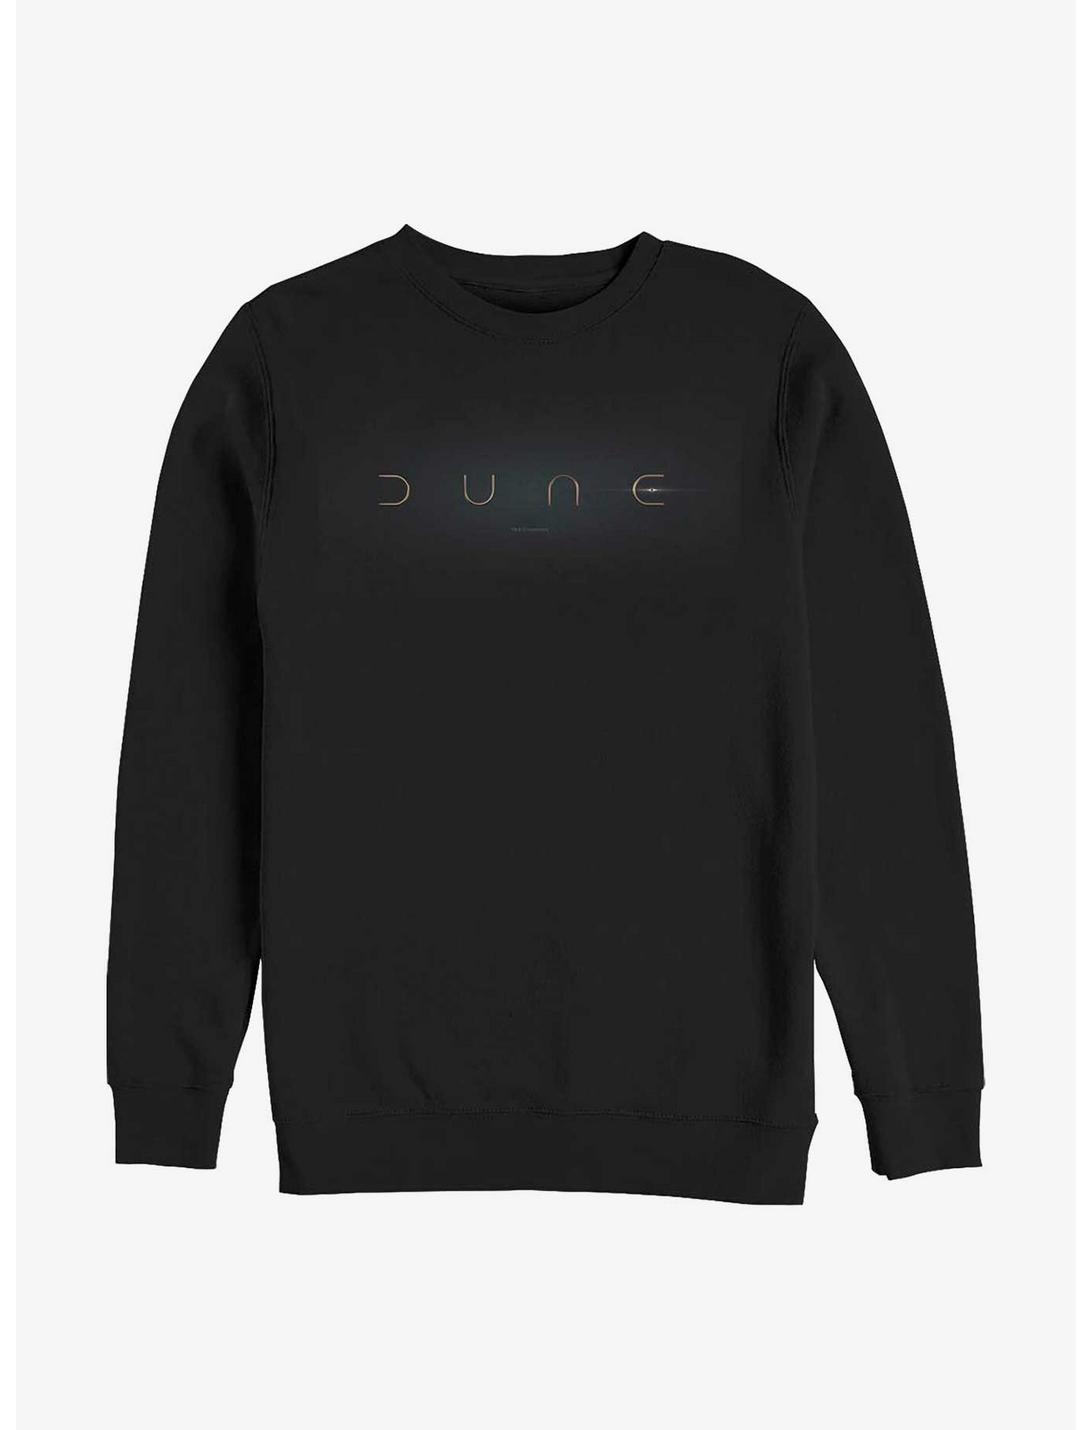 Dune Dune Logo Crew Sweatshirt, BLACK, hi-res